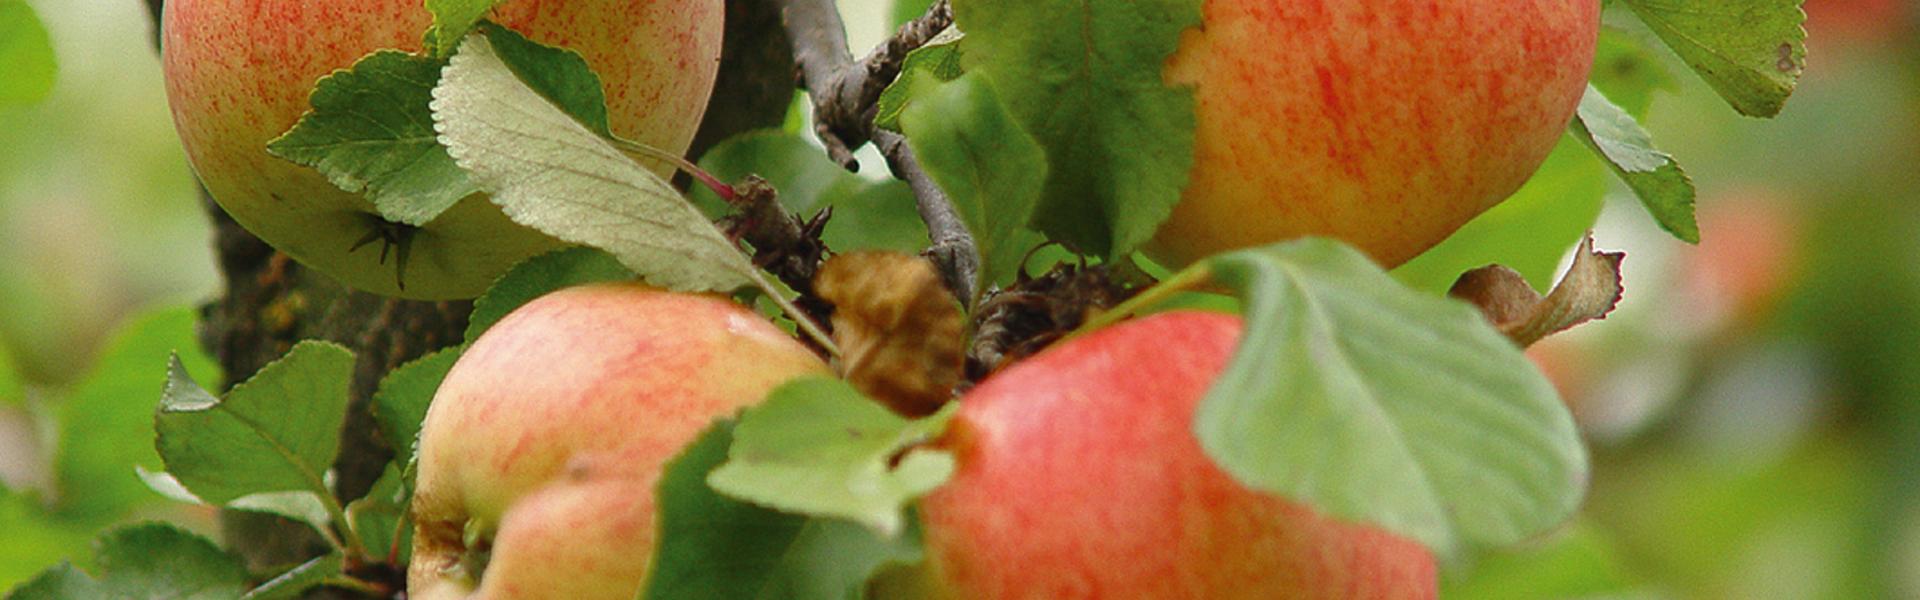 Kilka rumieniących się jabłek na gałęzi